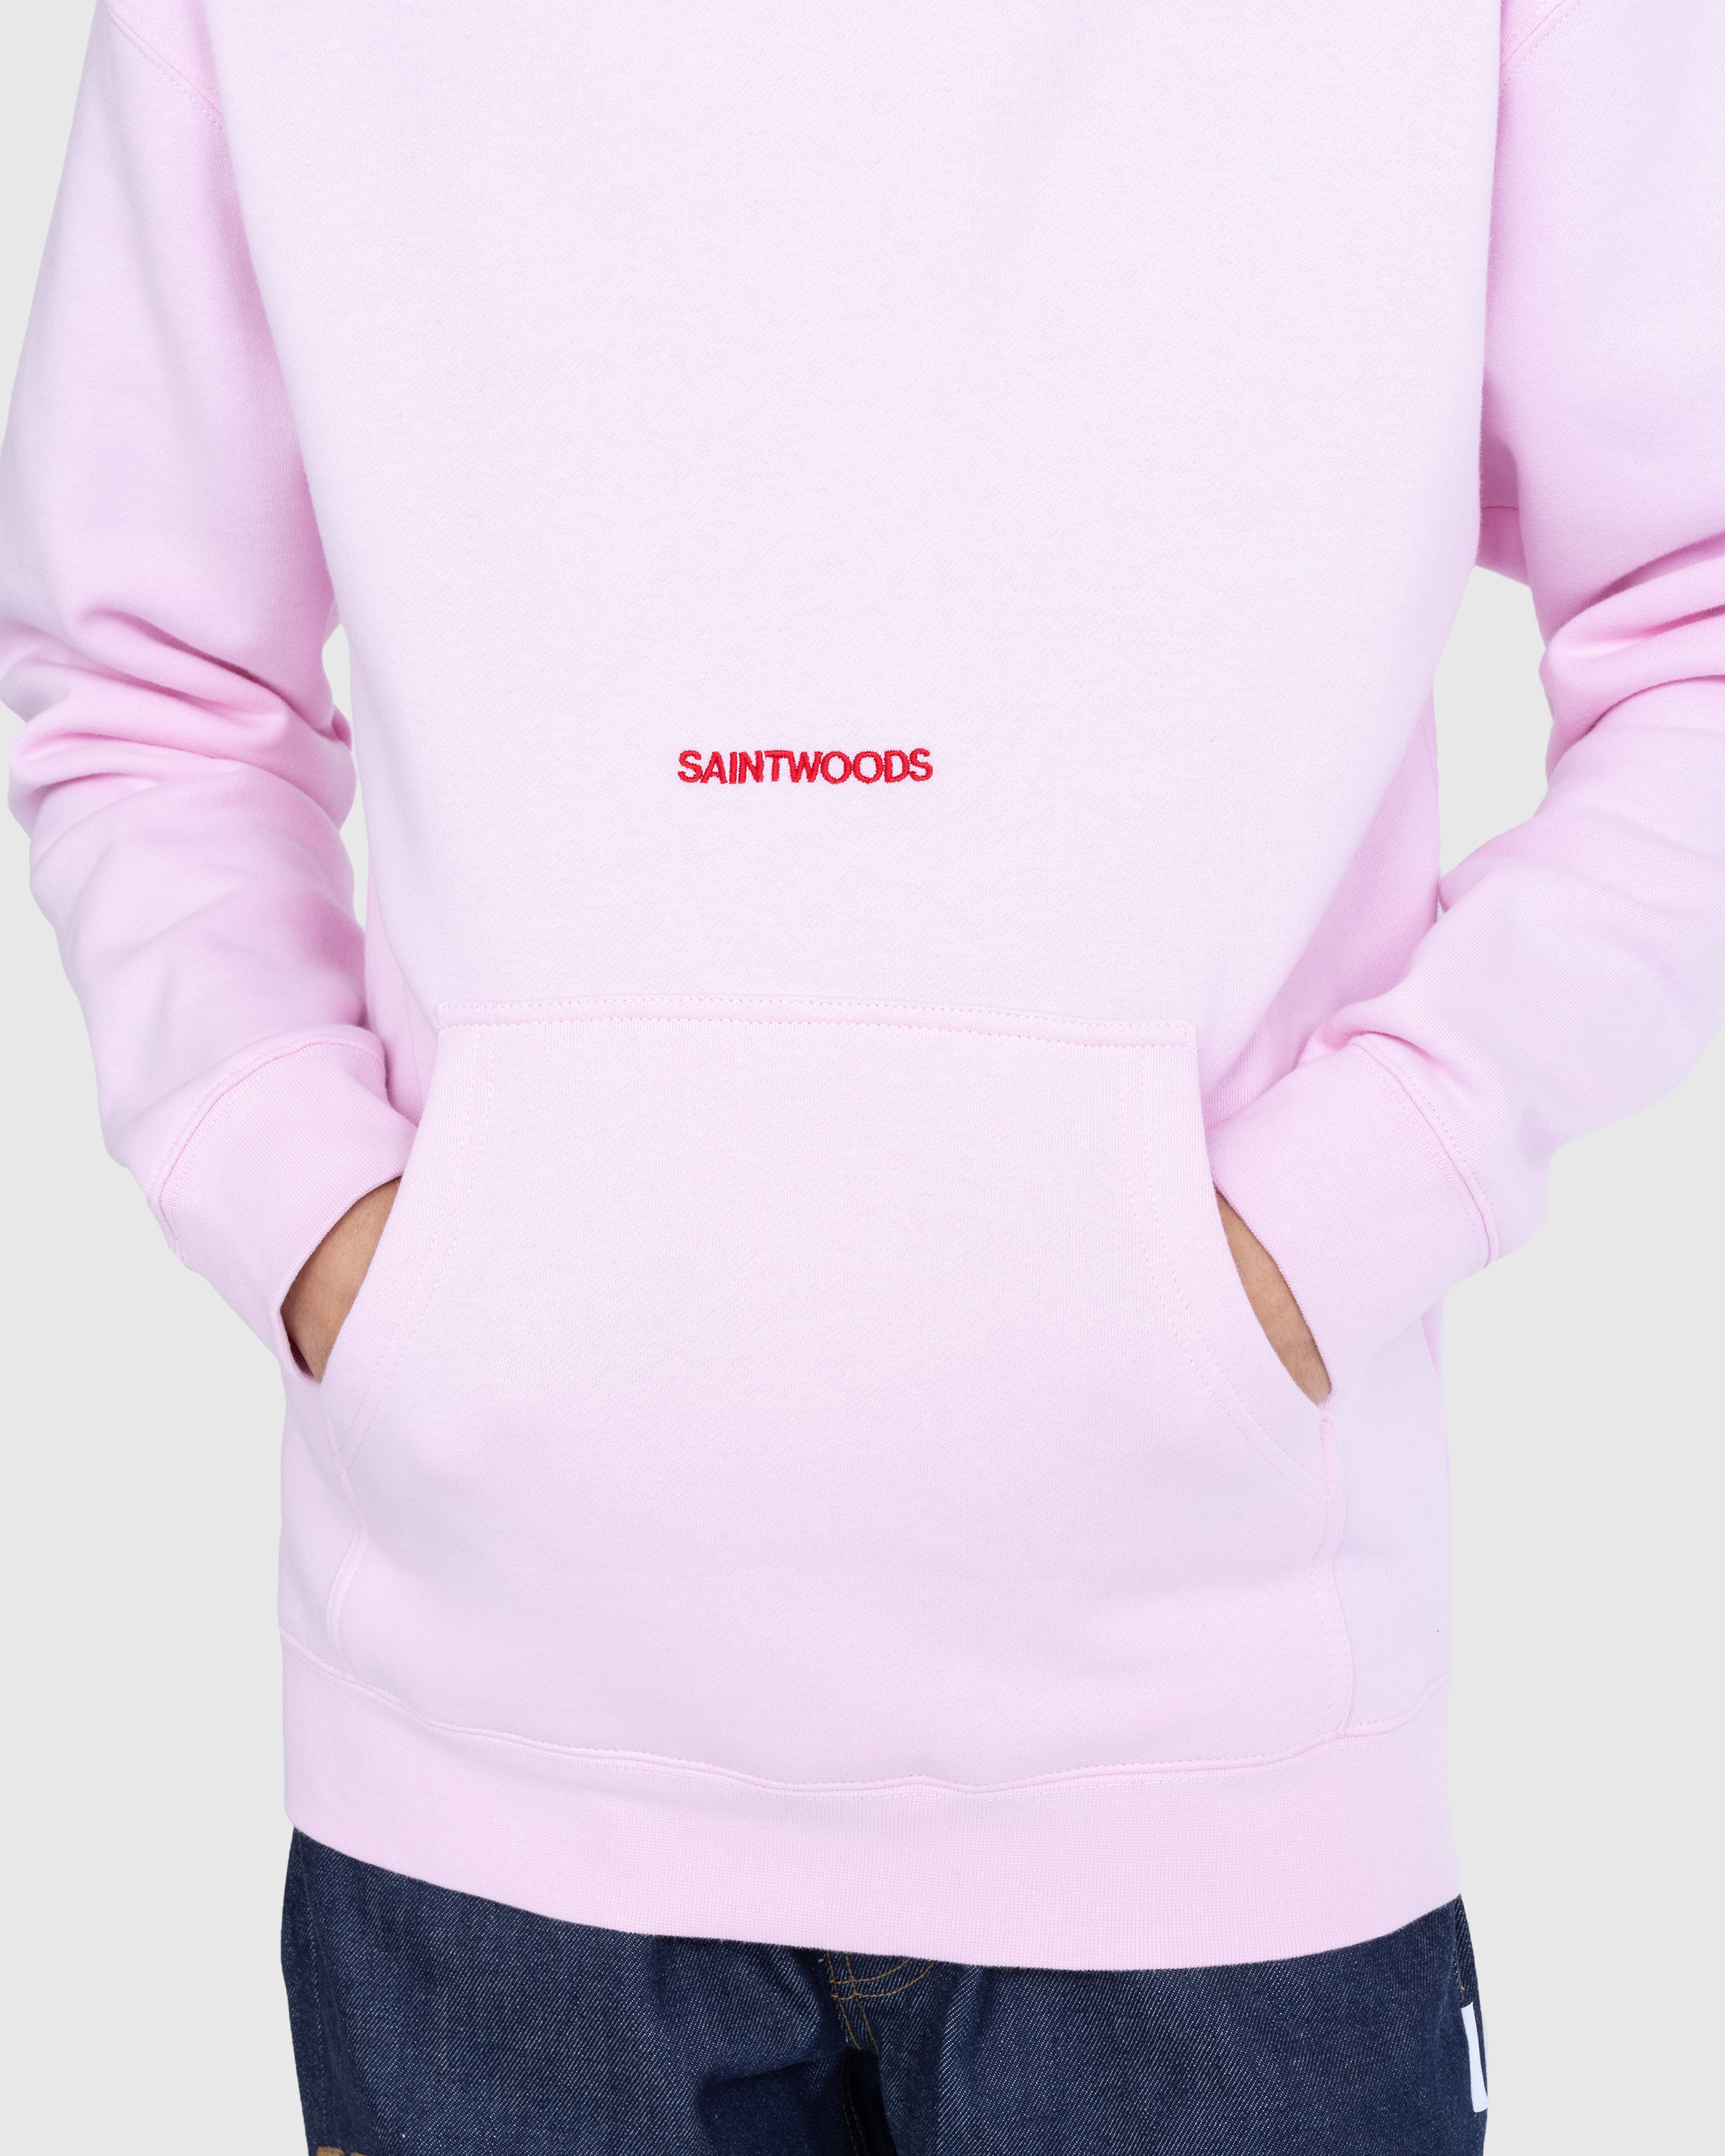 Saintwoods - SW Logo Hoodie Pink - Clothing - Pink - Image 5